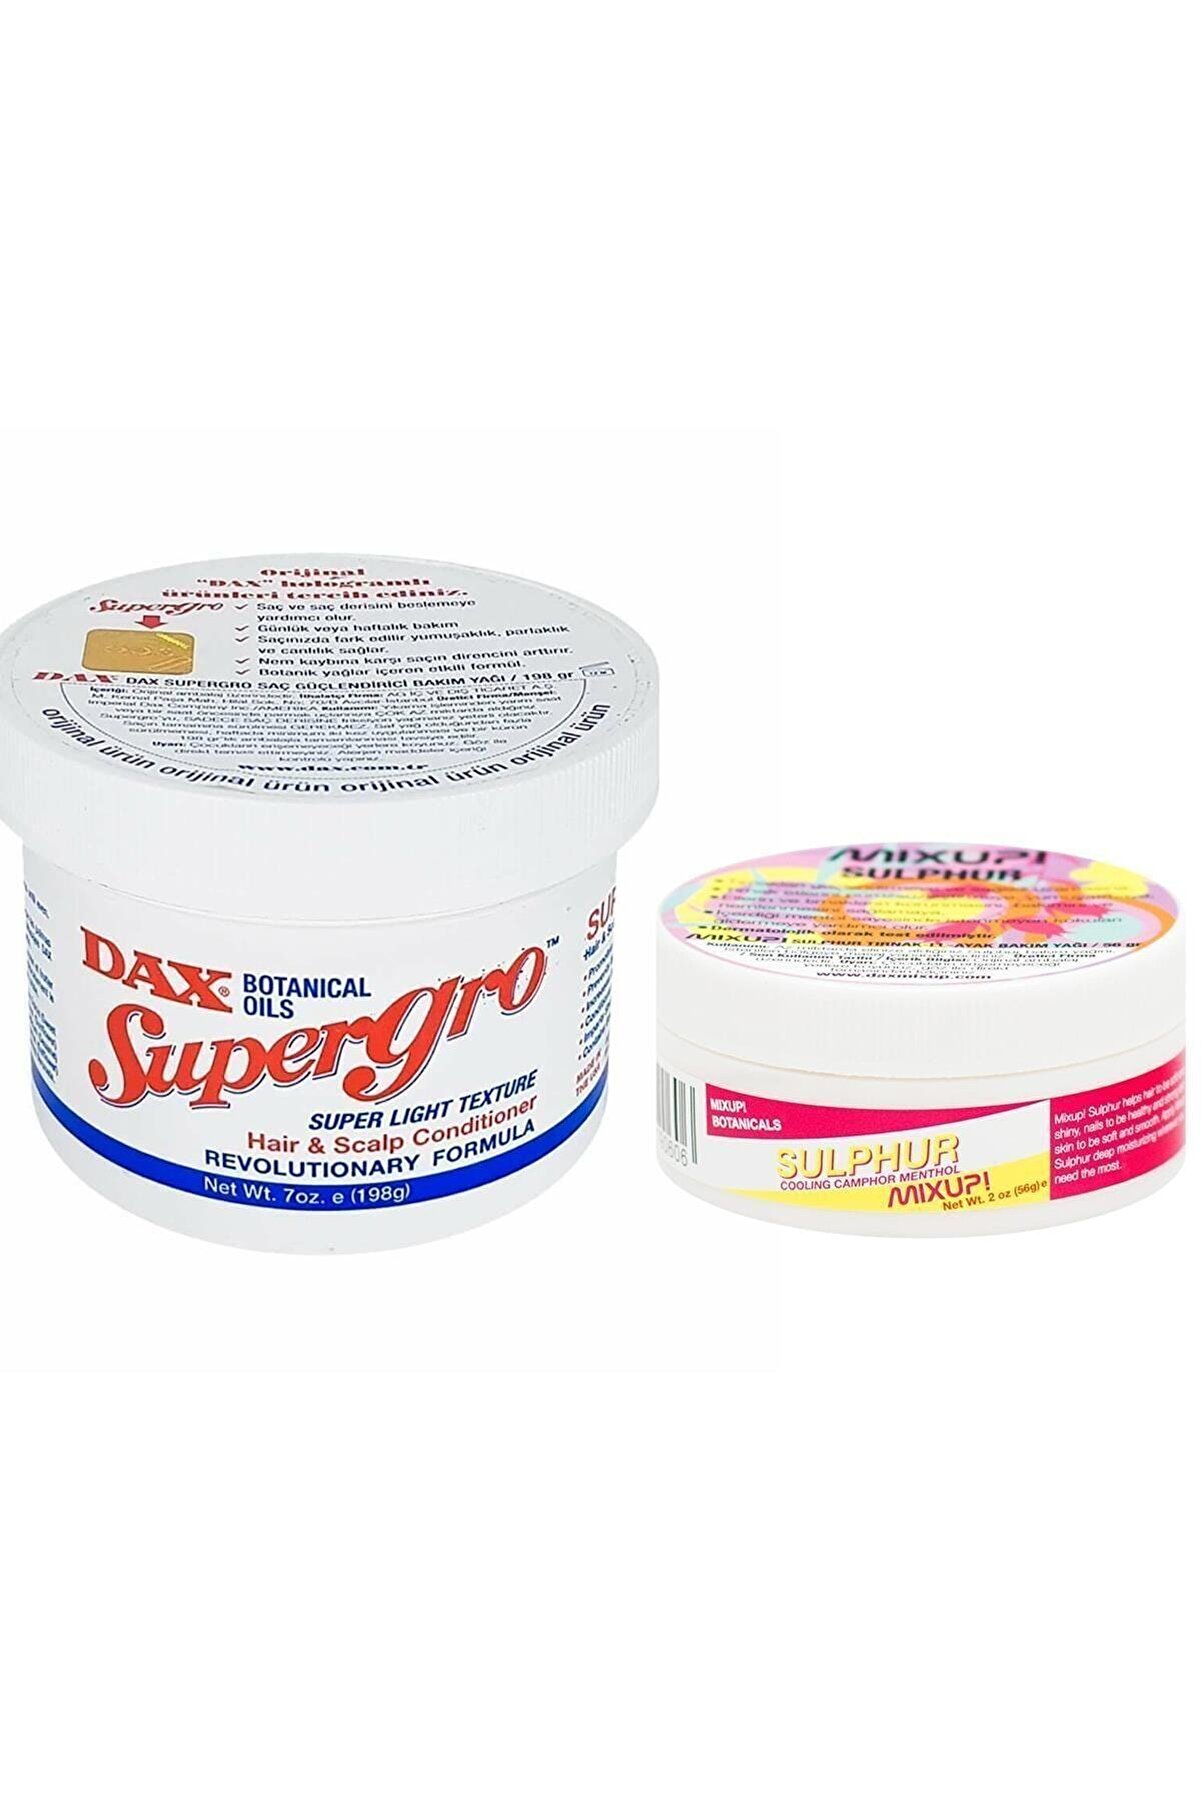 Dax Supergo 198 G - Yavaş Uzayan Saçlara Özel Saç Bakım Yağı + Mixup! Sulphur 56 G - Tırnak Bakım Yağı